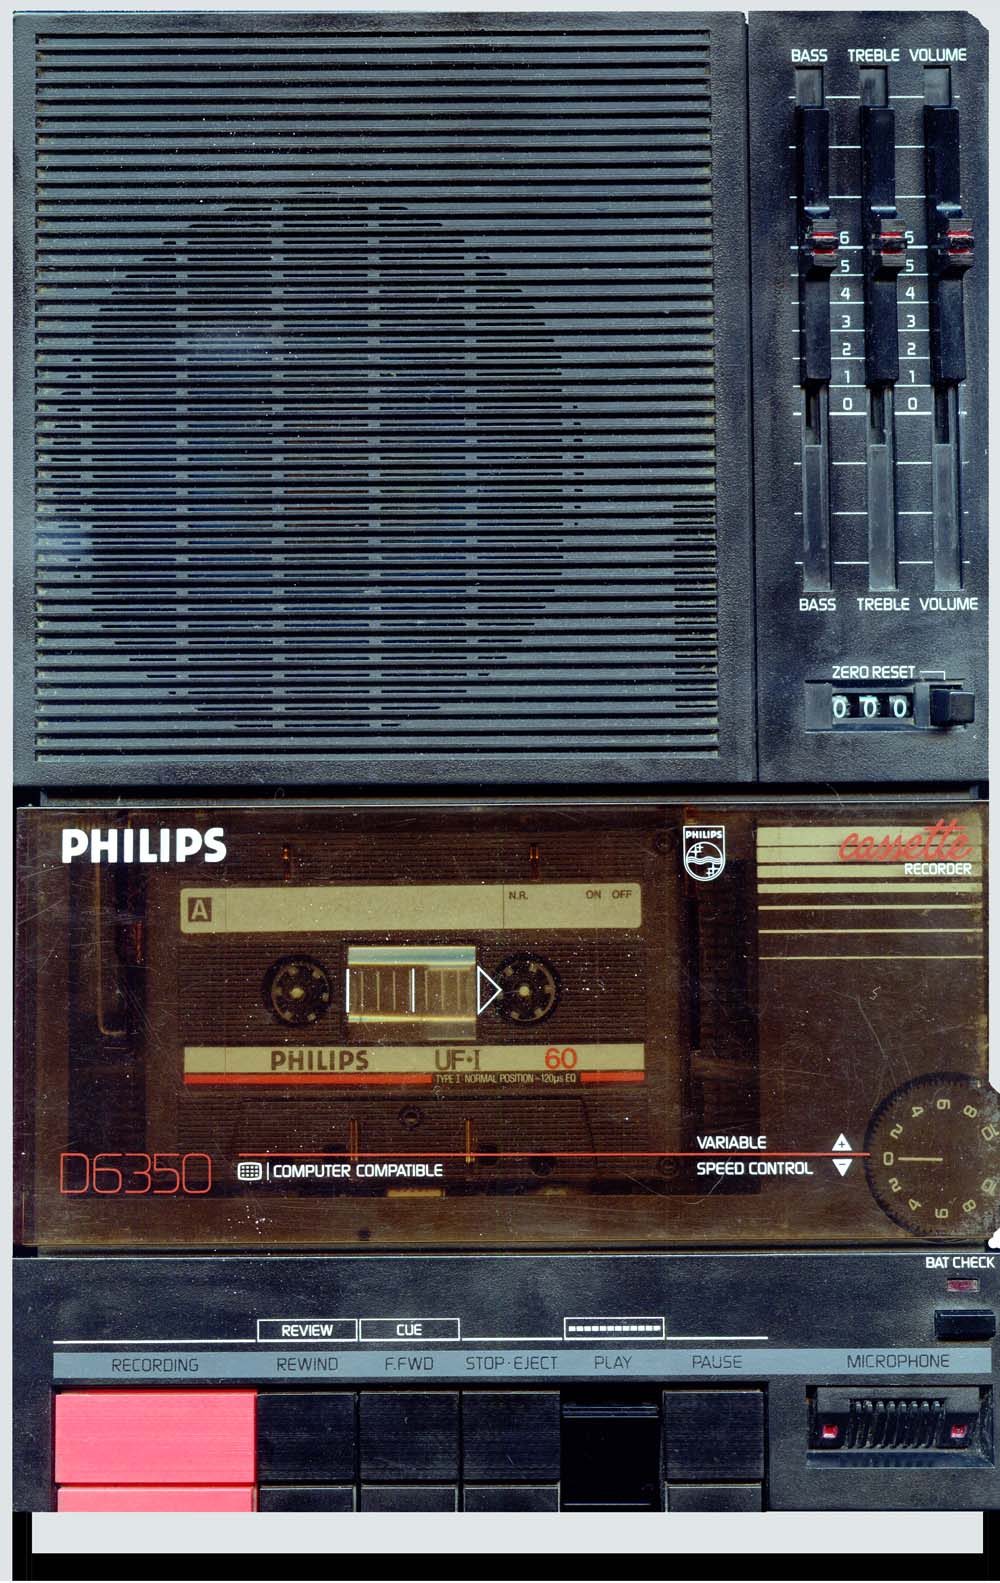 Кассетный магнитофон пенал планшет Philips для компьютера